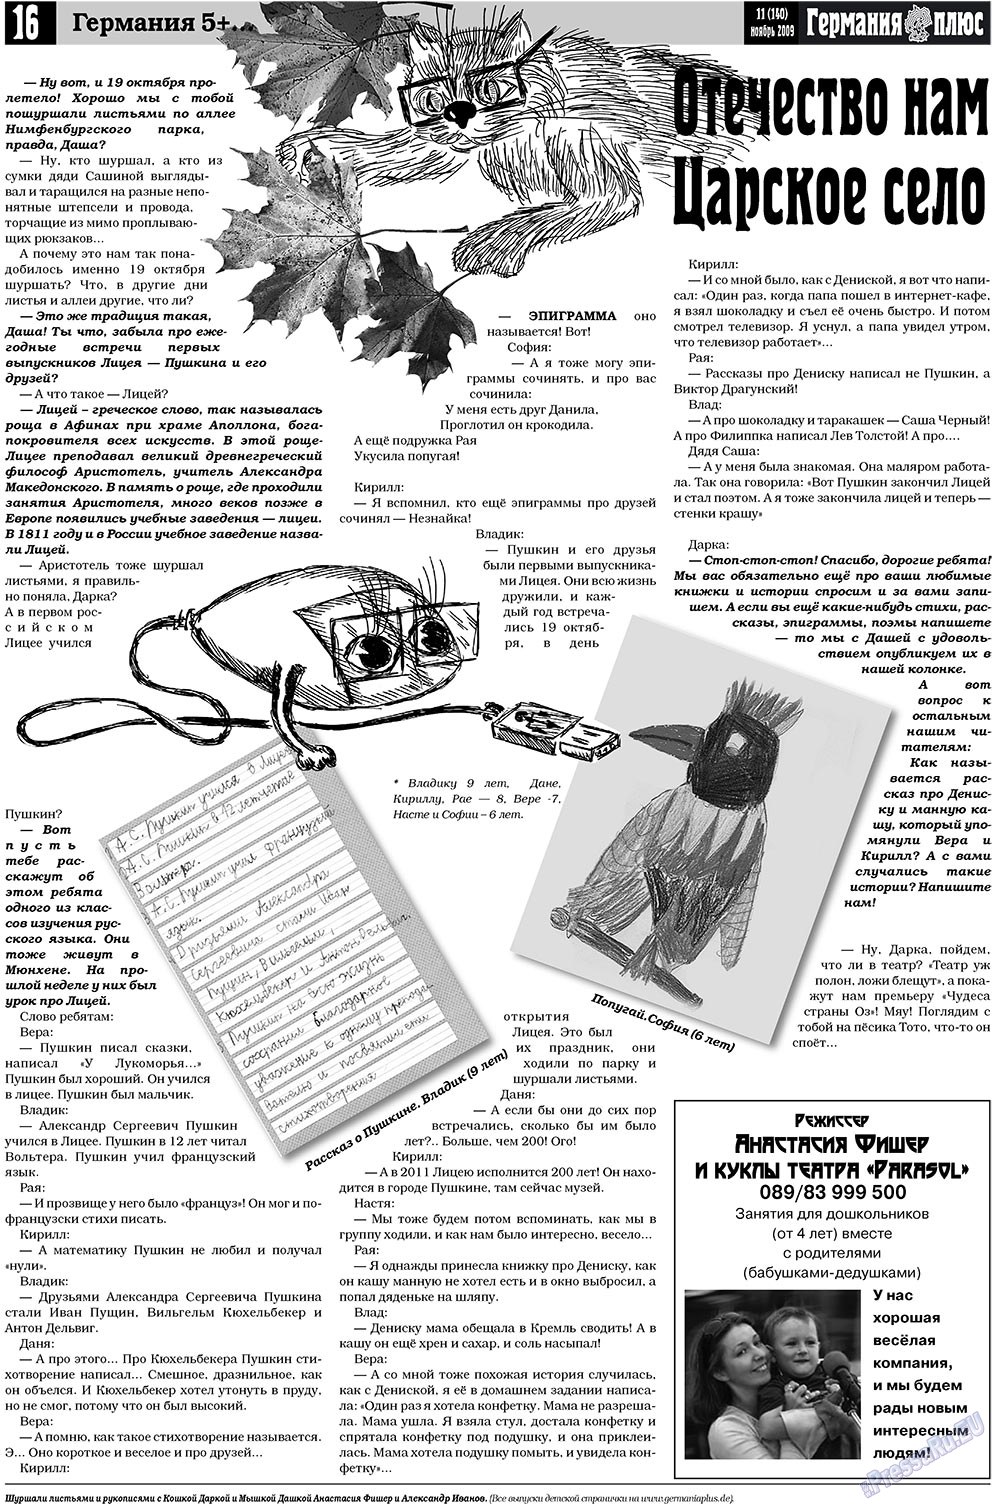 Германия плюс, газета. 2009 №11 стр.16